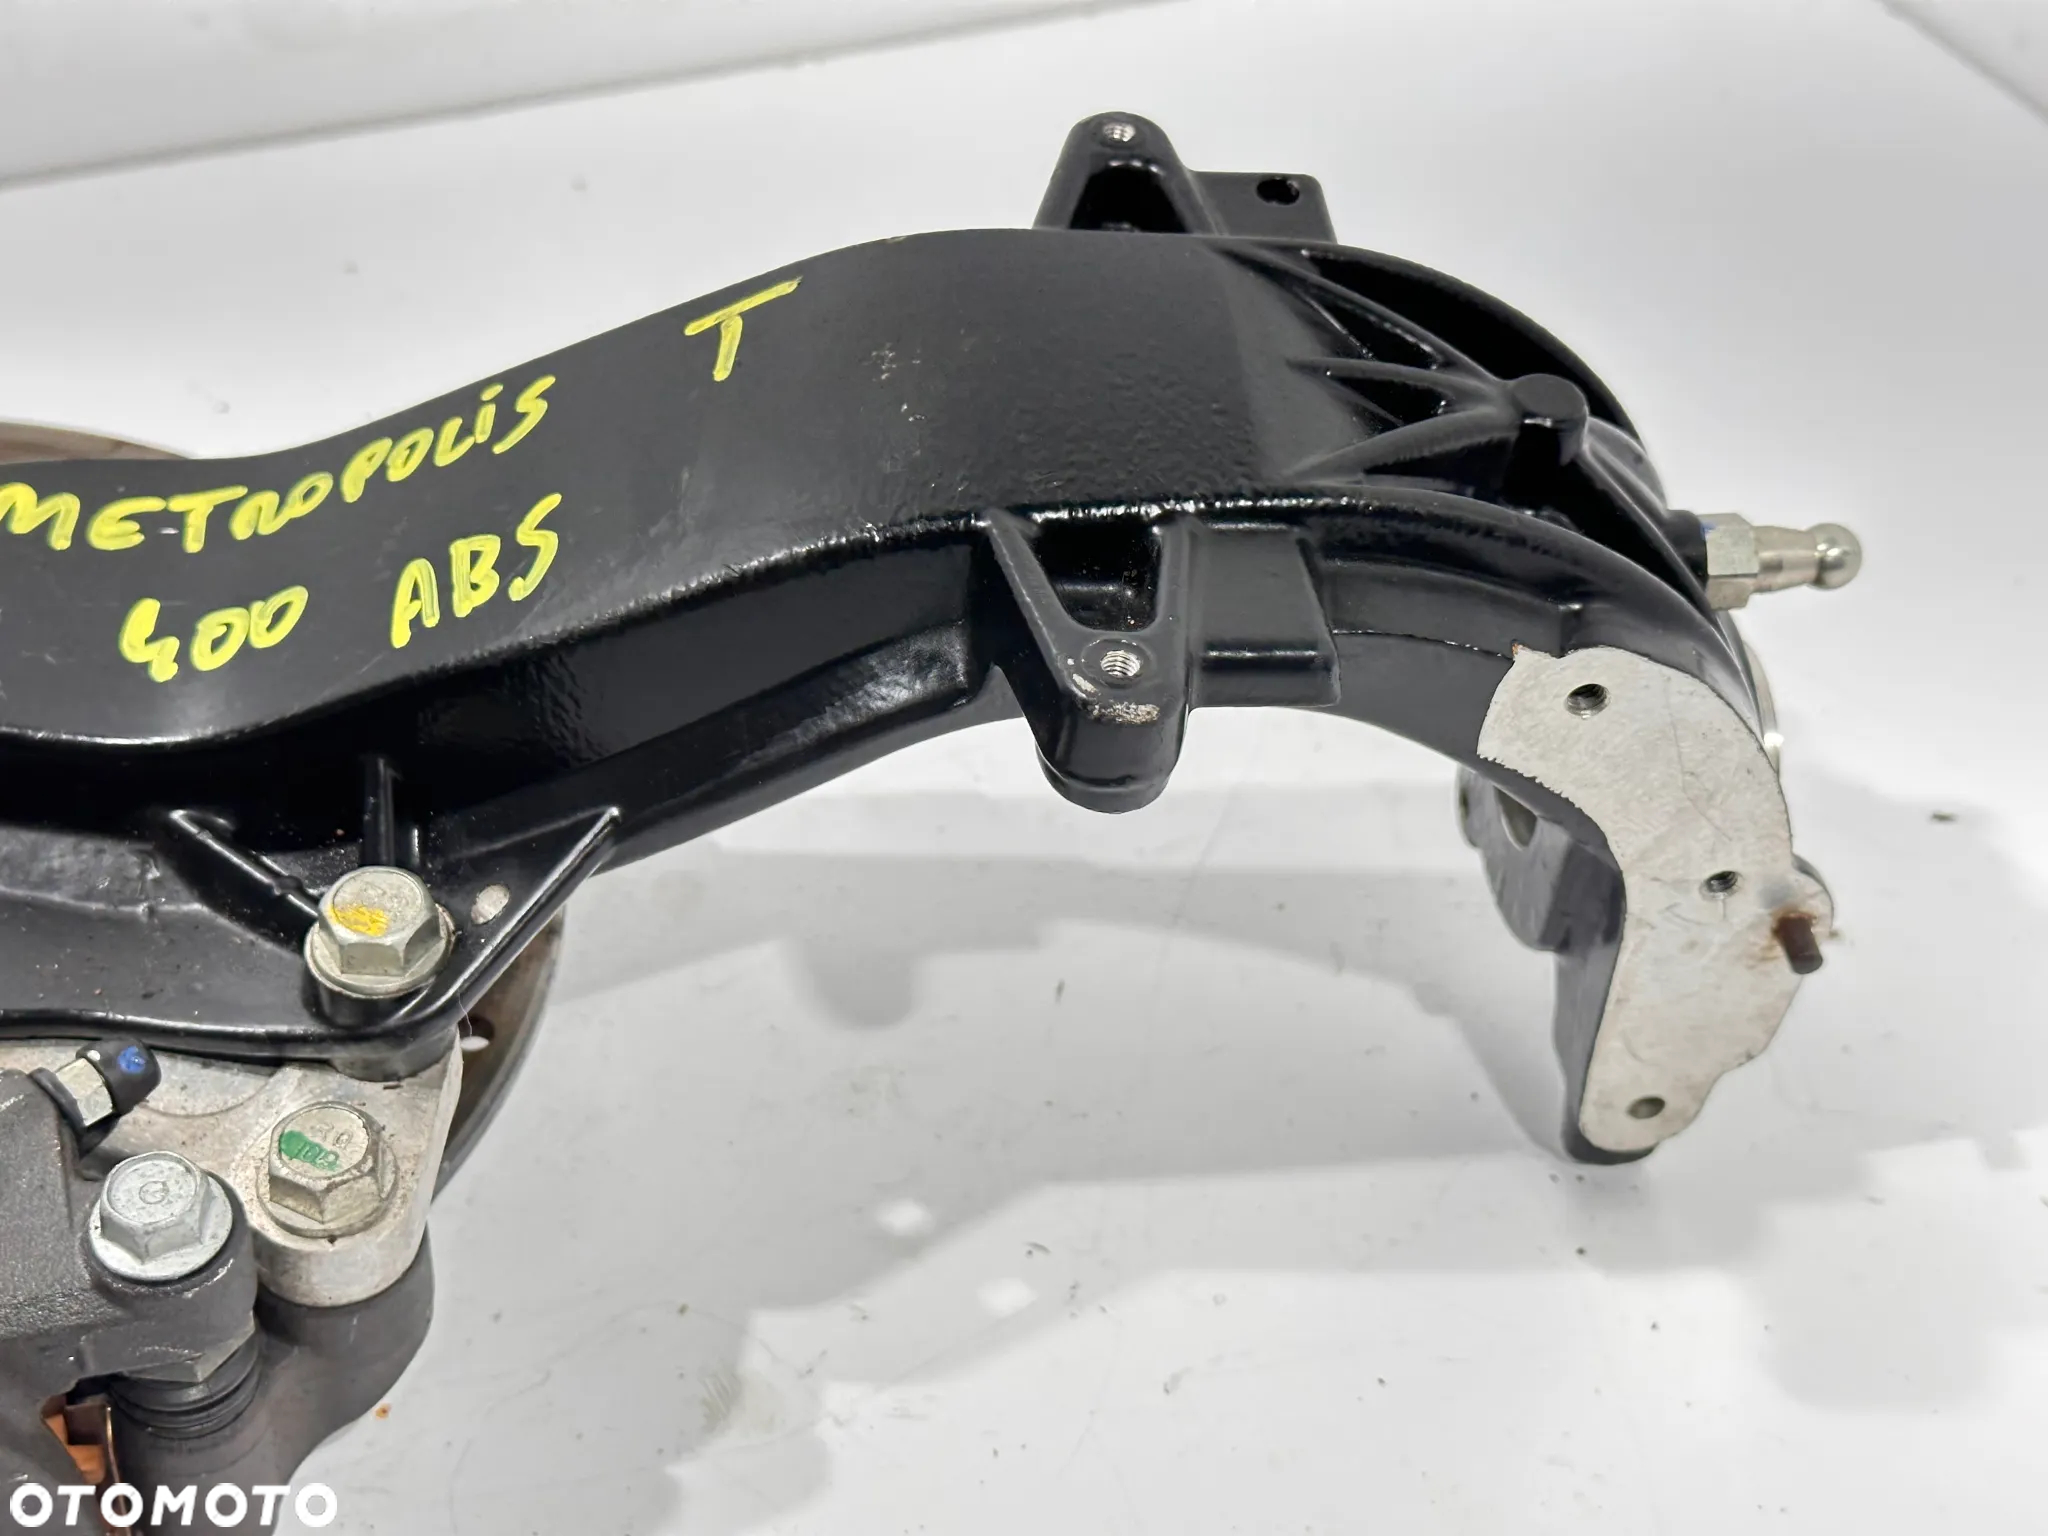 Zwrotnica noga zawieszenie ABS Peugeot Metropolis 400 - 4